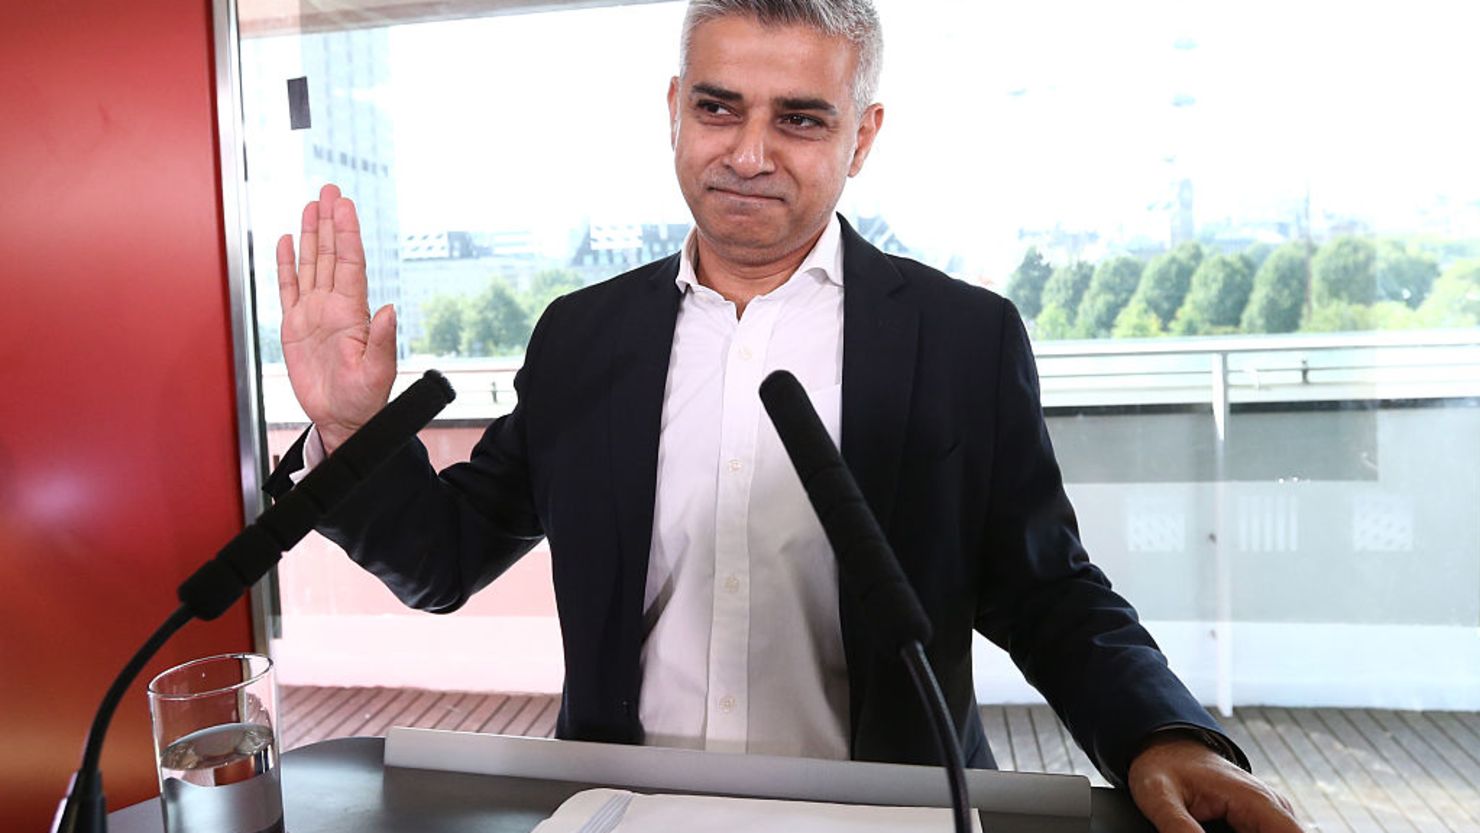 Sadiq Khan del partido Laborista fue elegido como el primer alcalde musulmán de Londres.